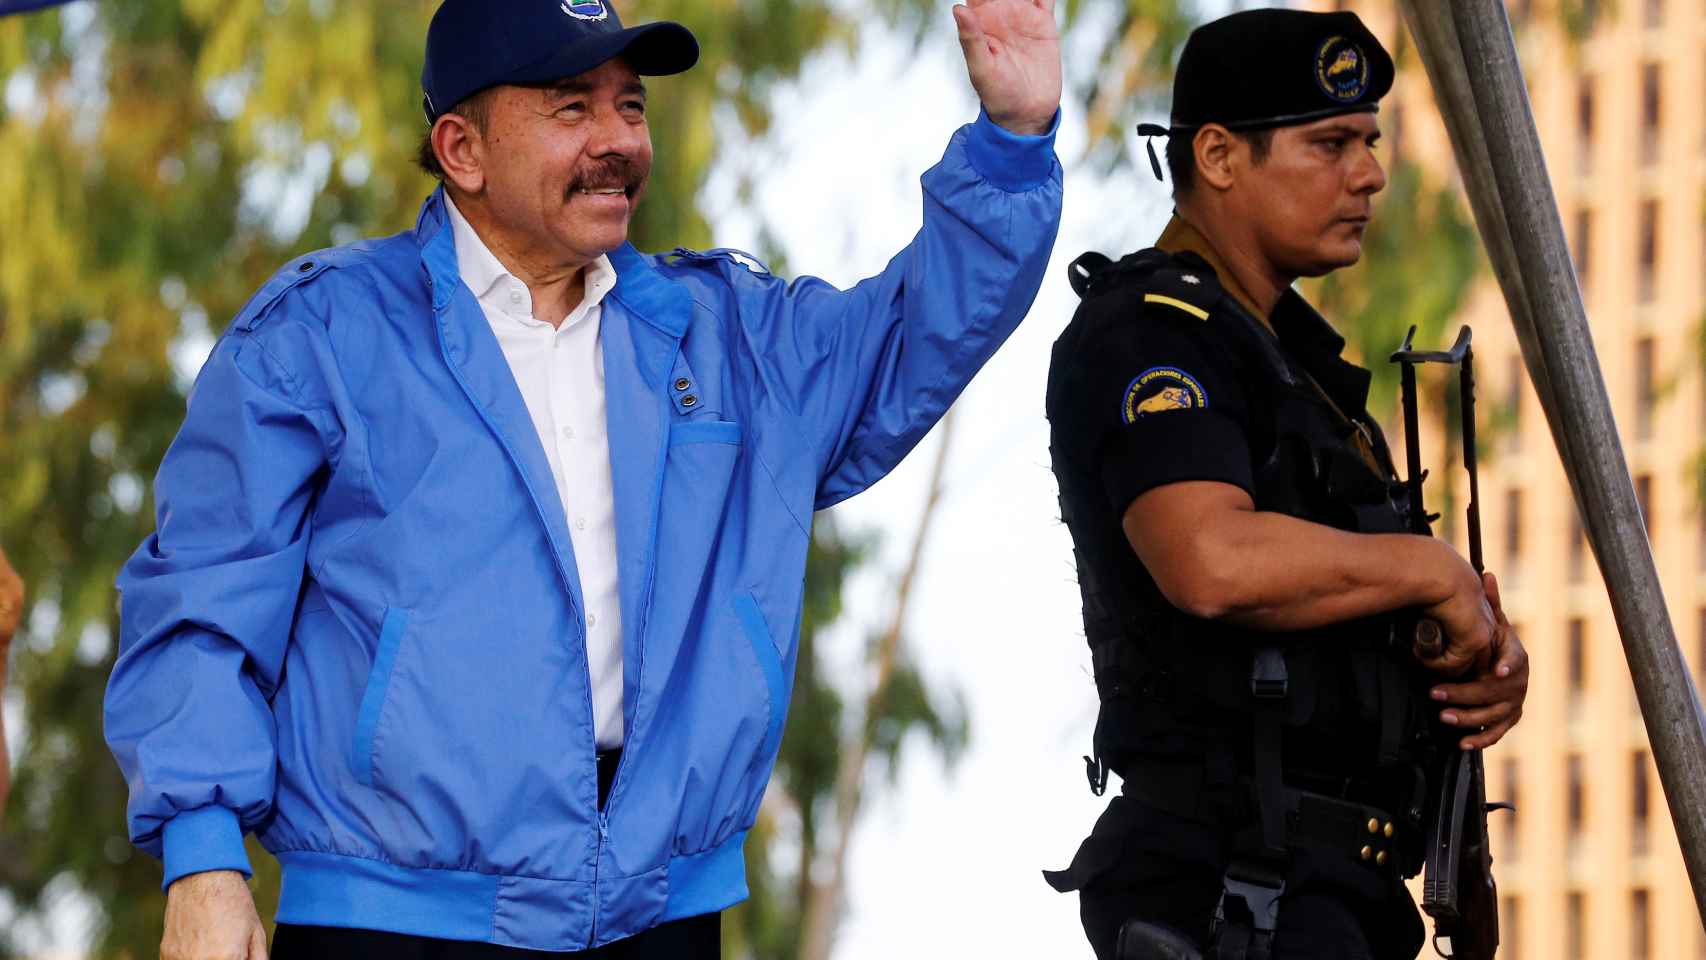 Ortega, en un acto público en mitad de la crisis que vive su país.